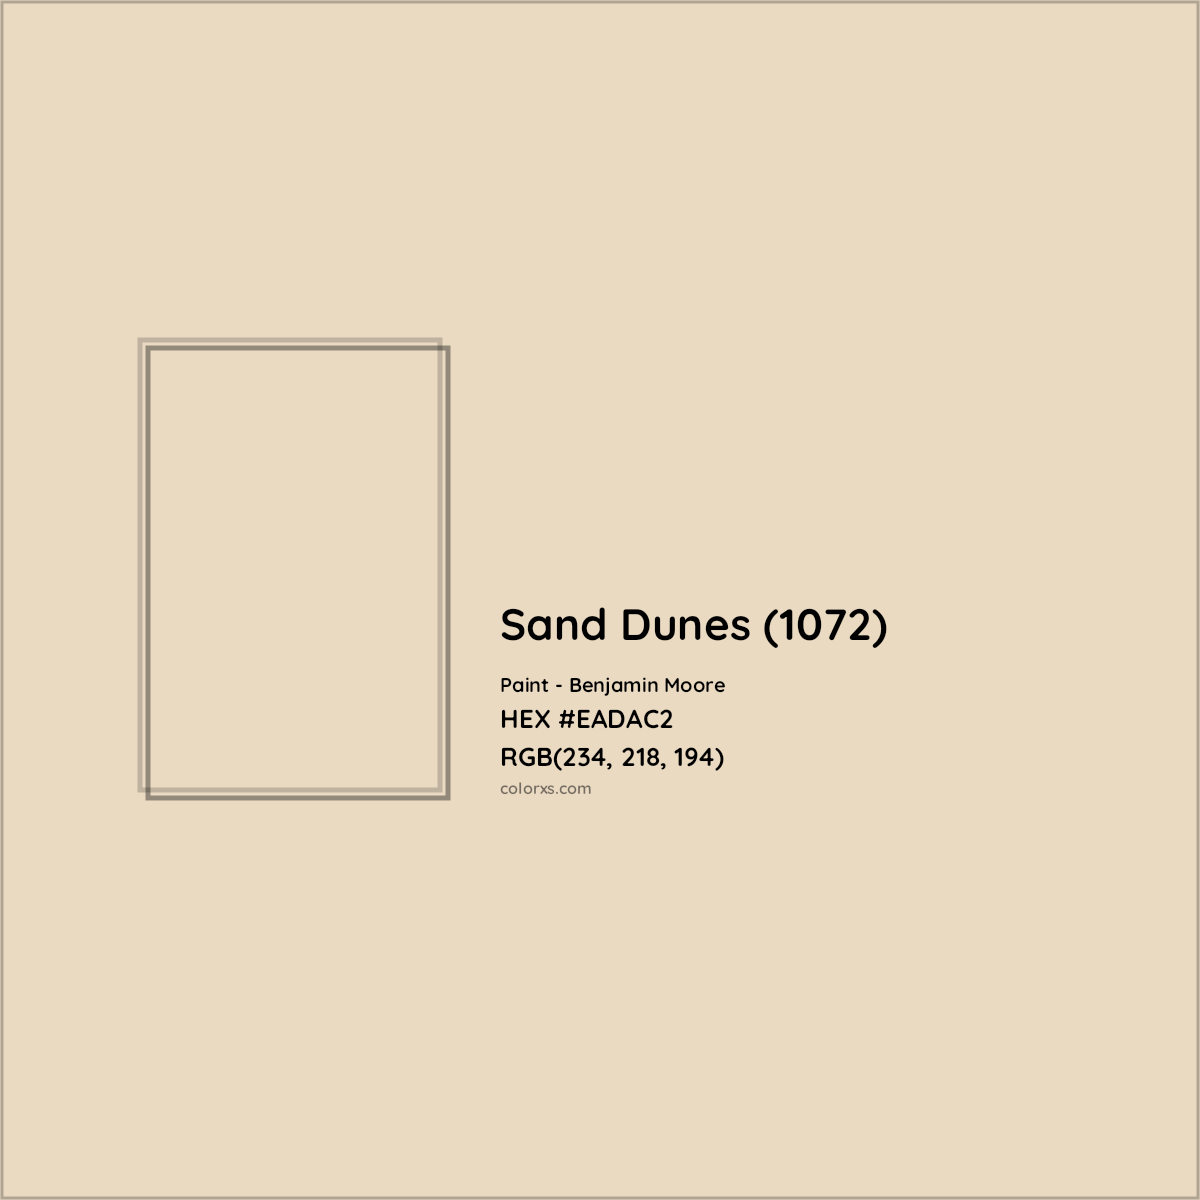 HEX #EADAC2 Sand Dunes (1072) Paint Benjamin Moore - Color Code